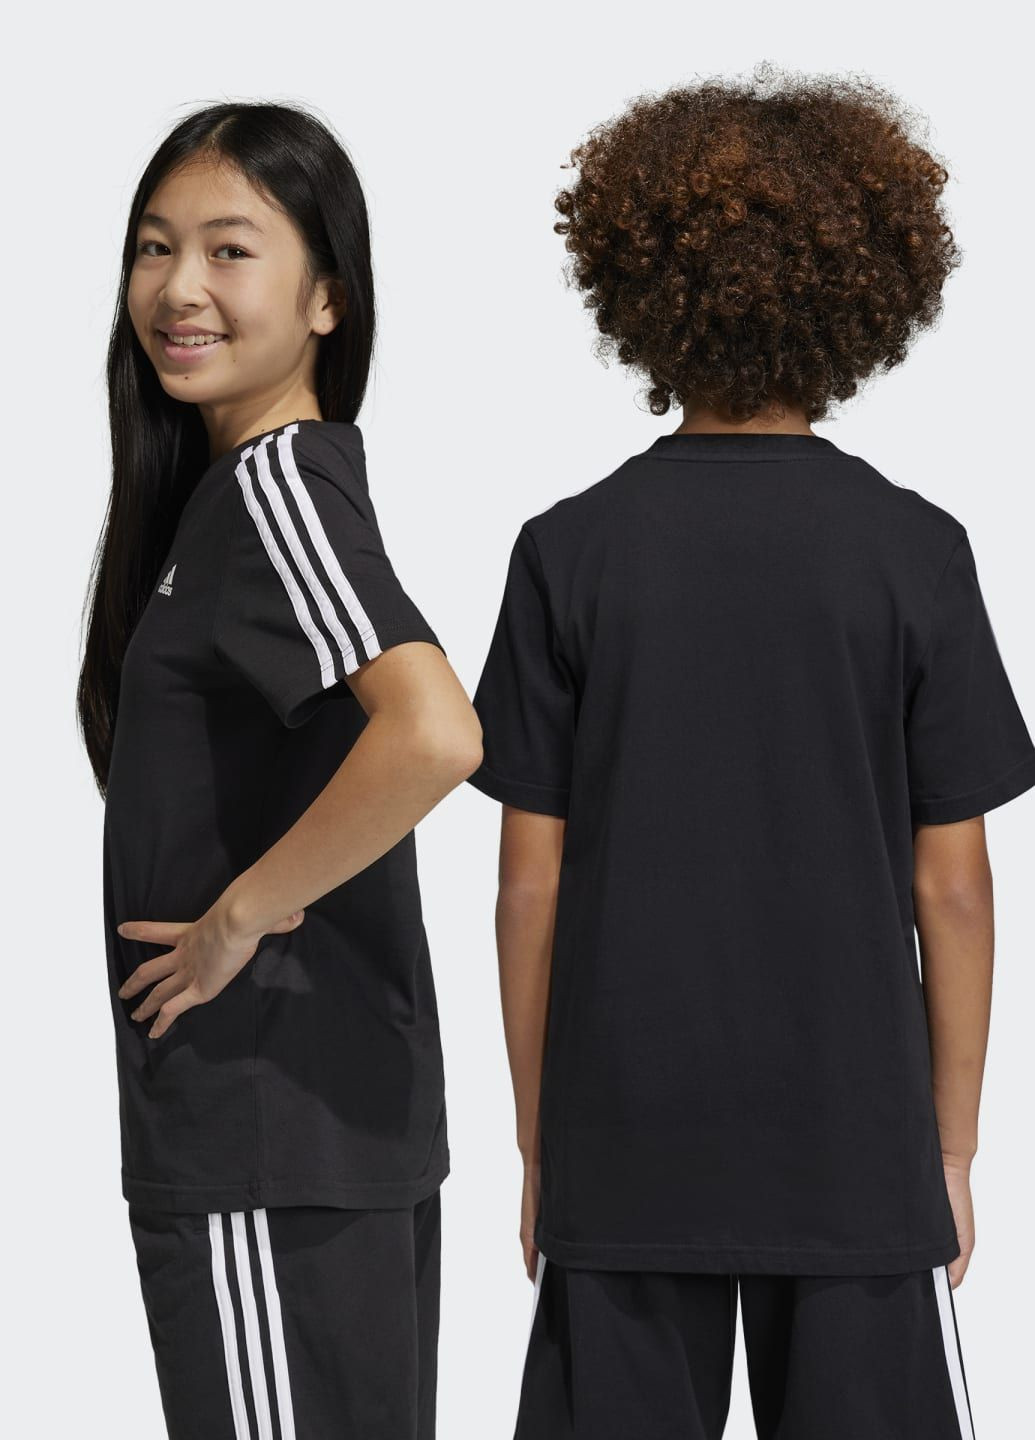 Черная демисезонная футболка essentials 3-stripes cotton adidas